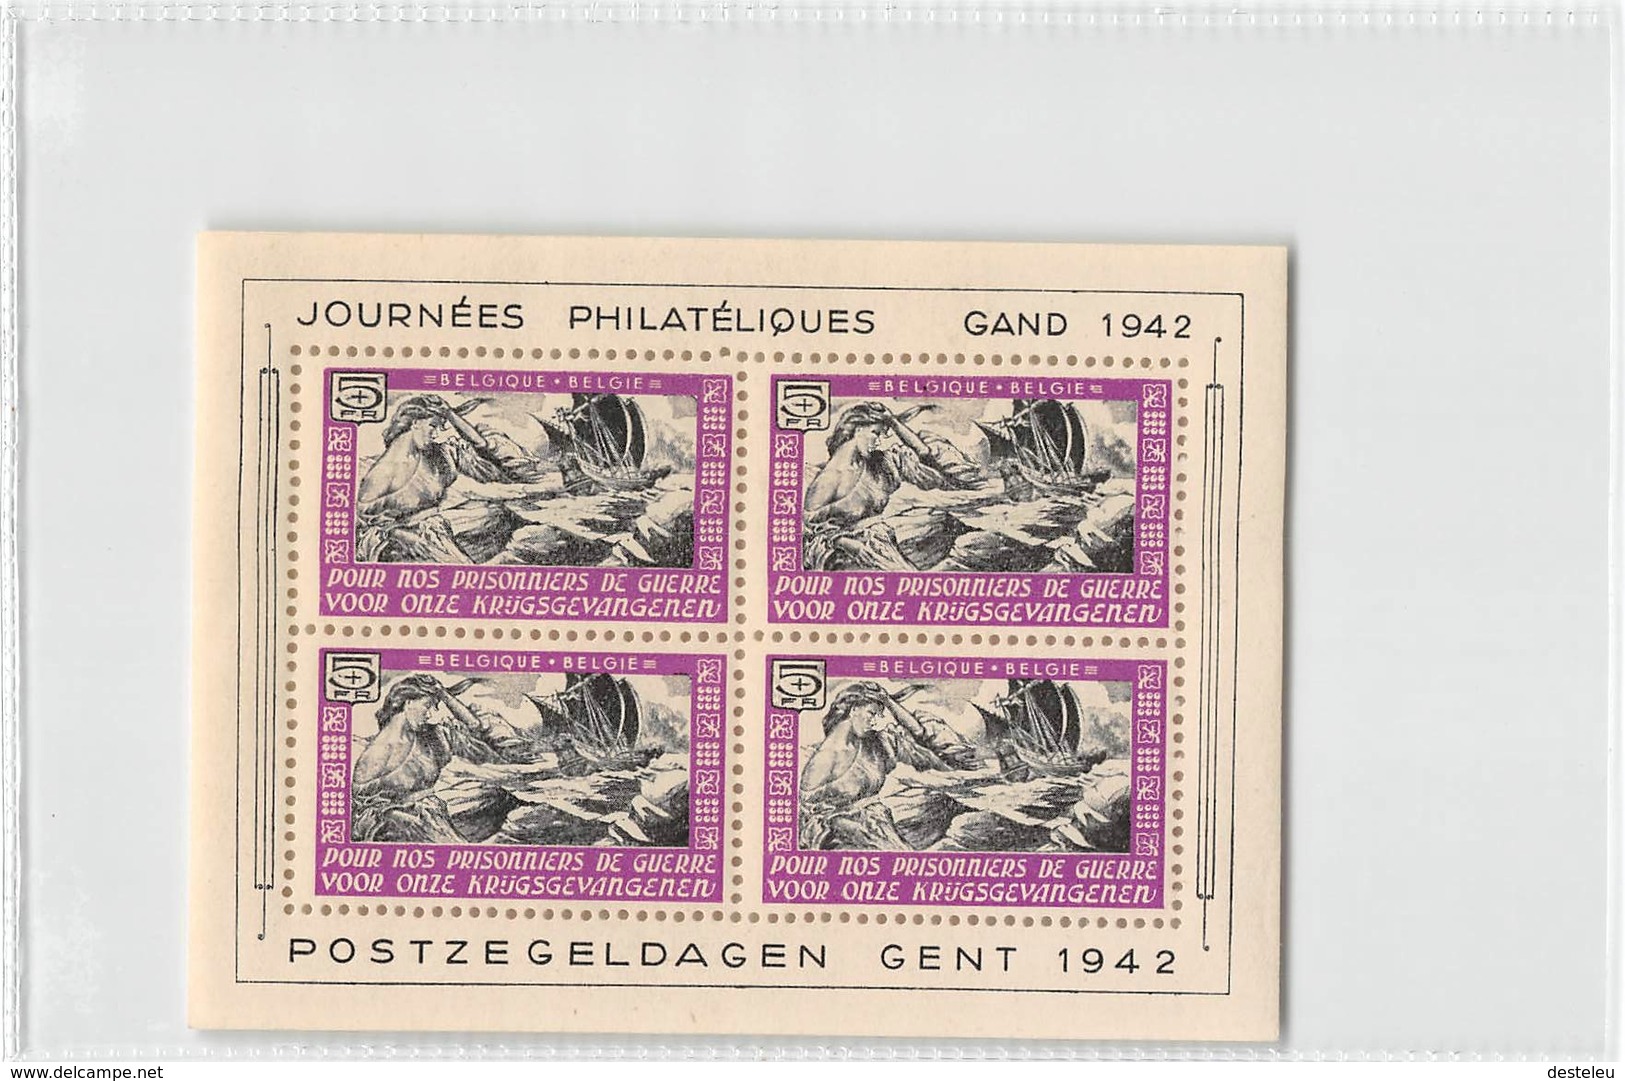 Belgium 1942 - Erinnophily - Postzegeldagen Gent - Series "Prisoners Of War" In Blocks - Ongebruikt